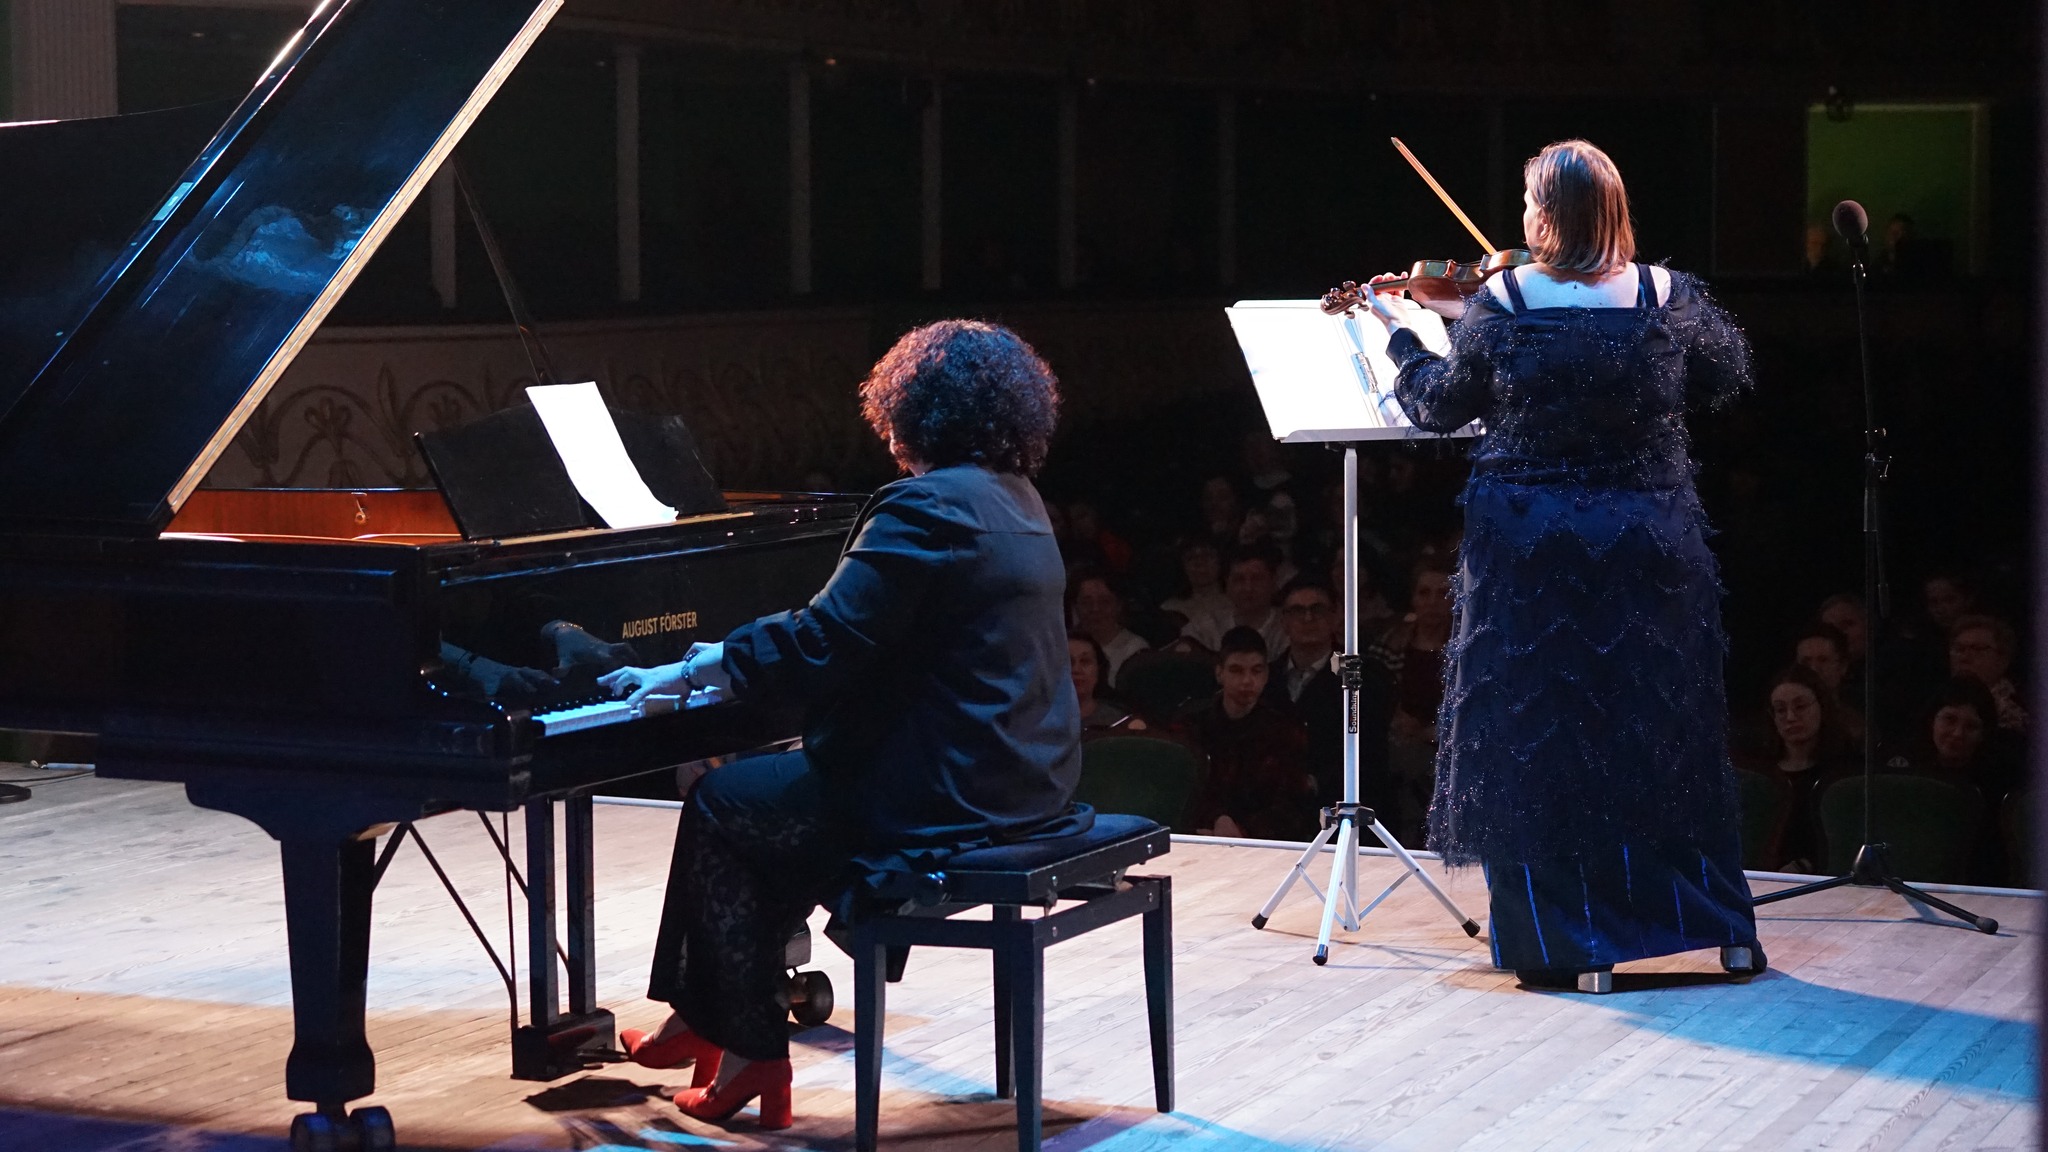 У Житомирі відбувся гала-концерт та нагородження переможців регіонального конкурсу юних піаністів ім. С. Ріхтера